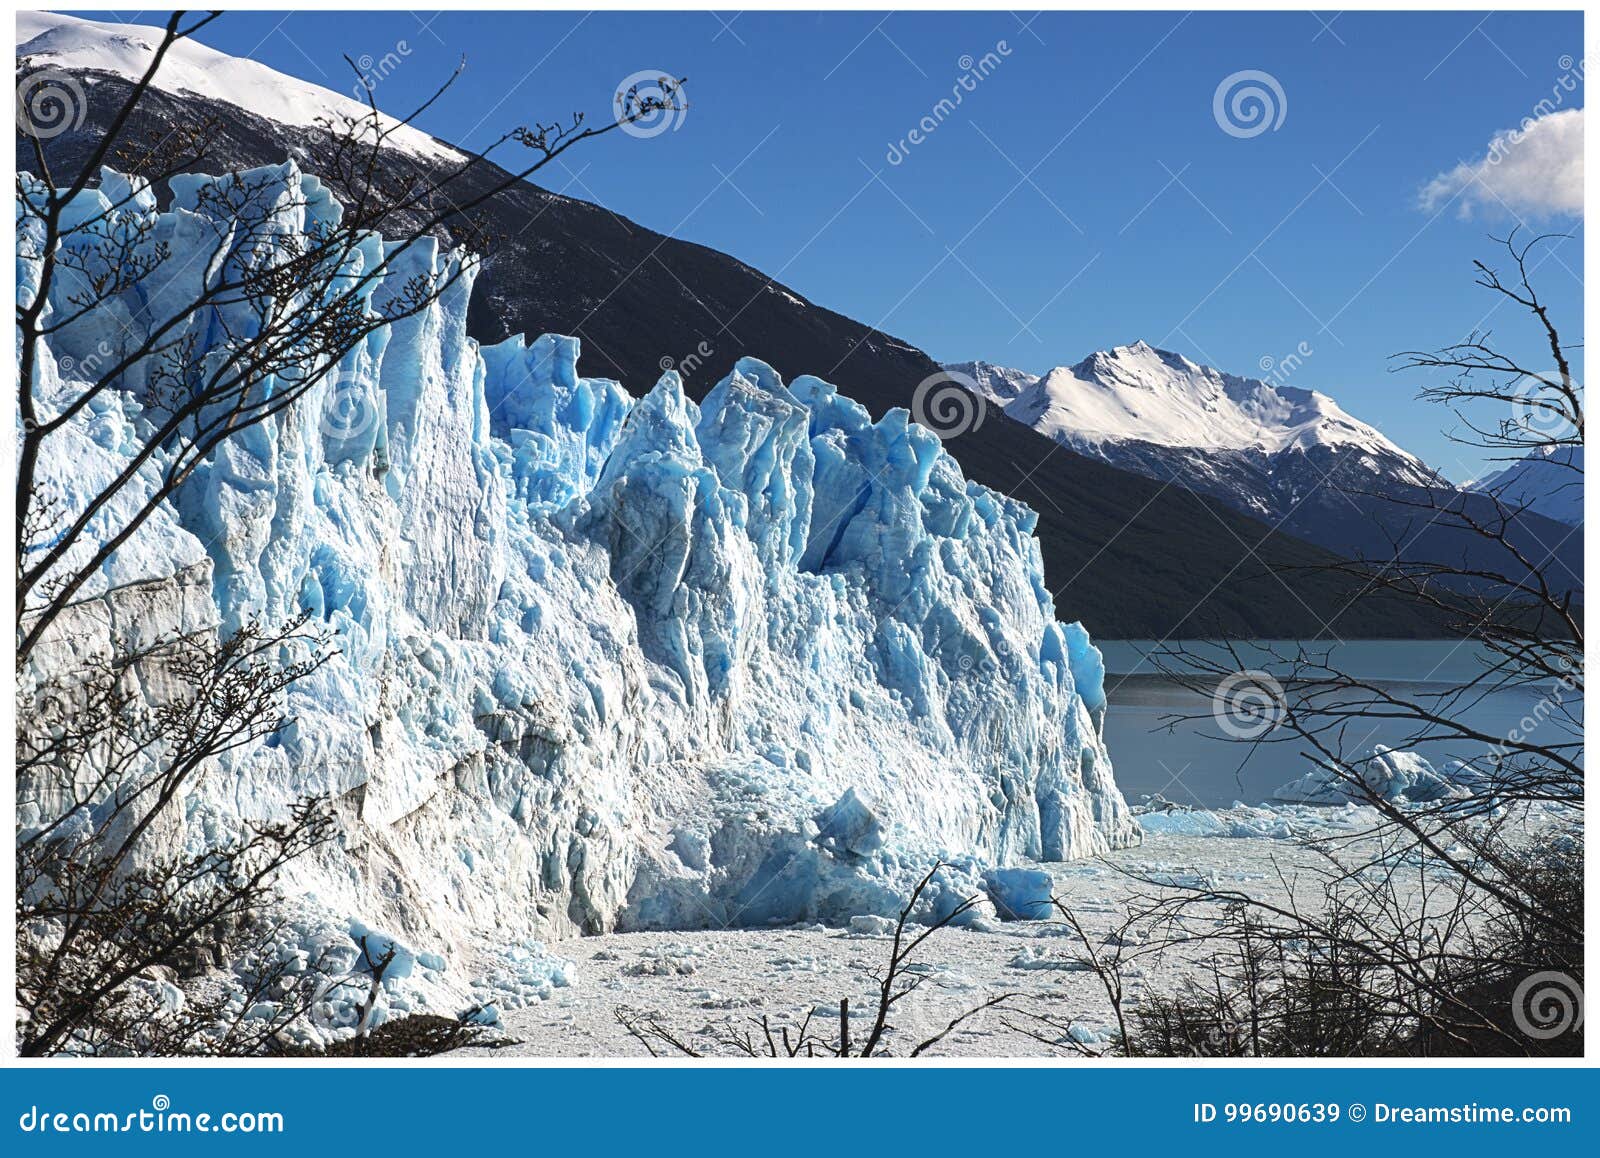 glaciar perito moreno - calafate - argentina